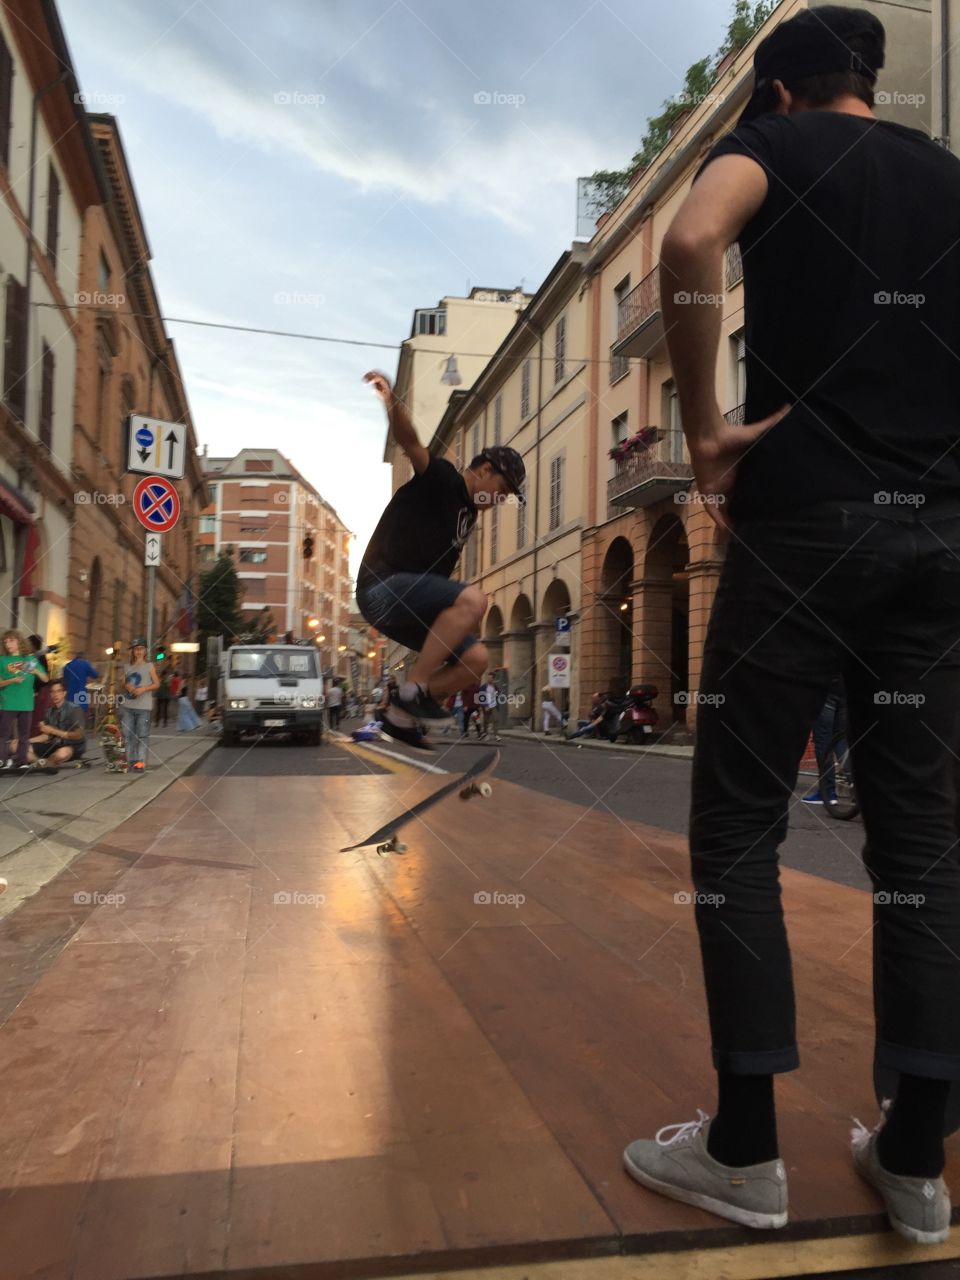 Skater in the city